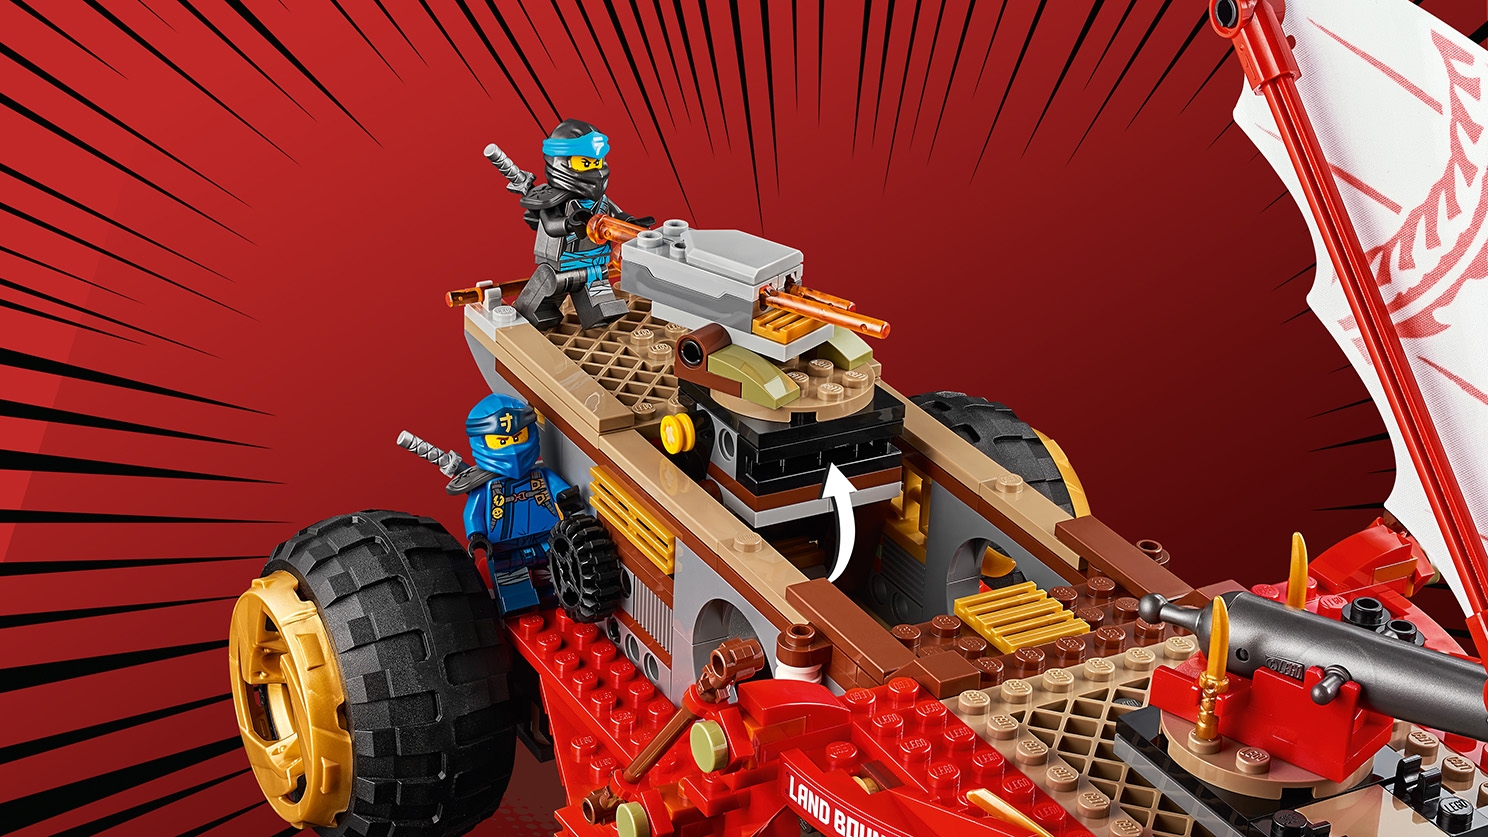 陸上戦艦バウンティ号 70677 - レゴ®ニンジャゴー セット - LEGO.comキッズ